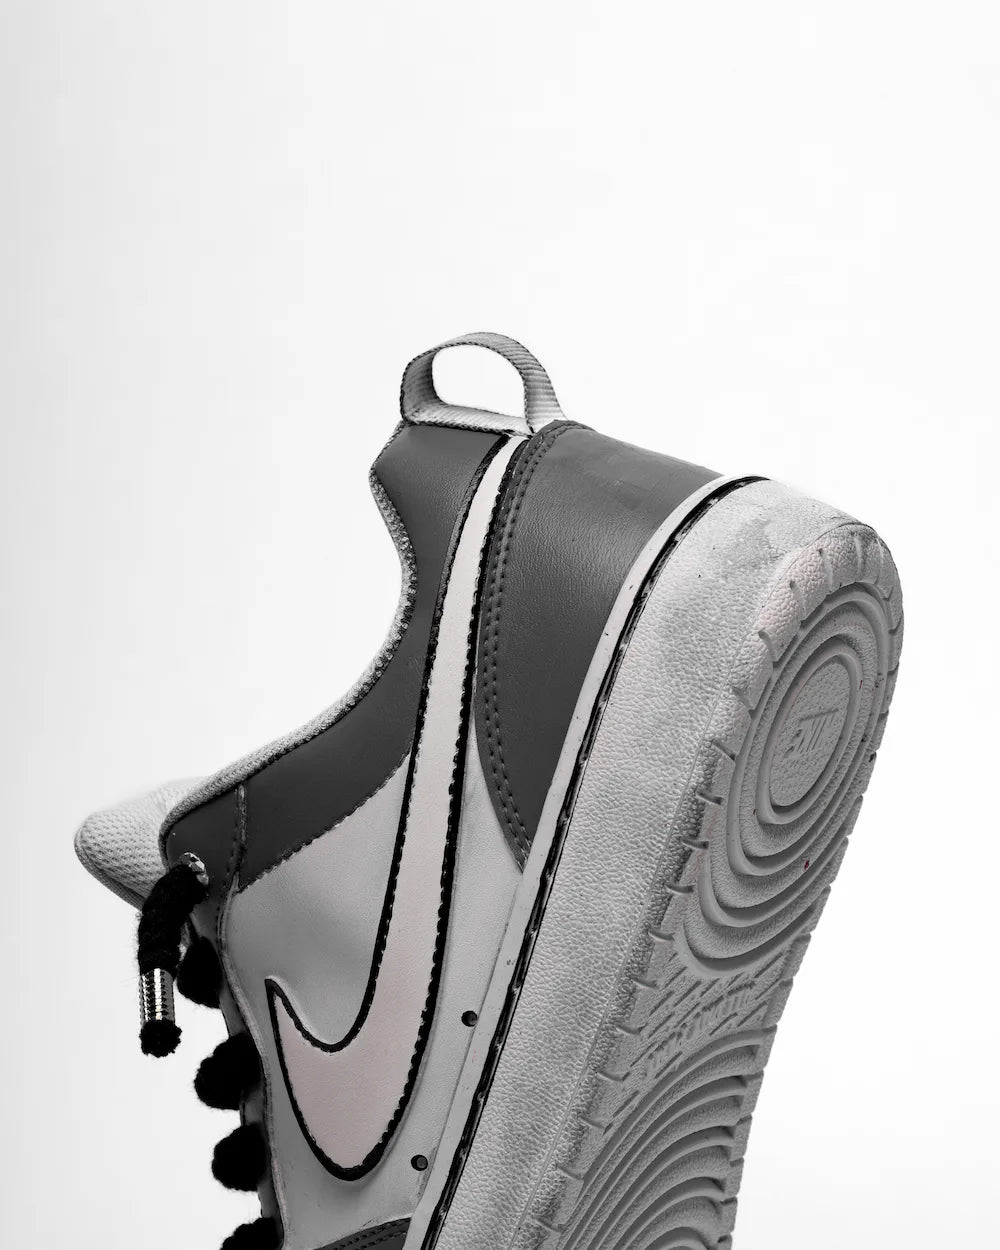 Nike Court Vision custom modello "5 Points Grey", dipinta a mano in due tonalità di grigio, con lacci in corda neri